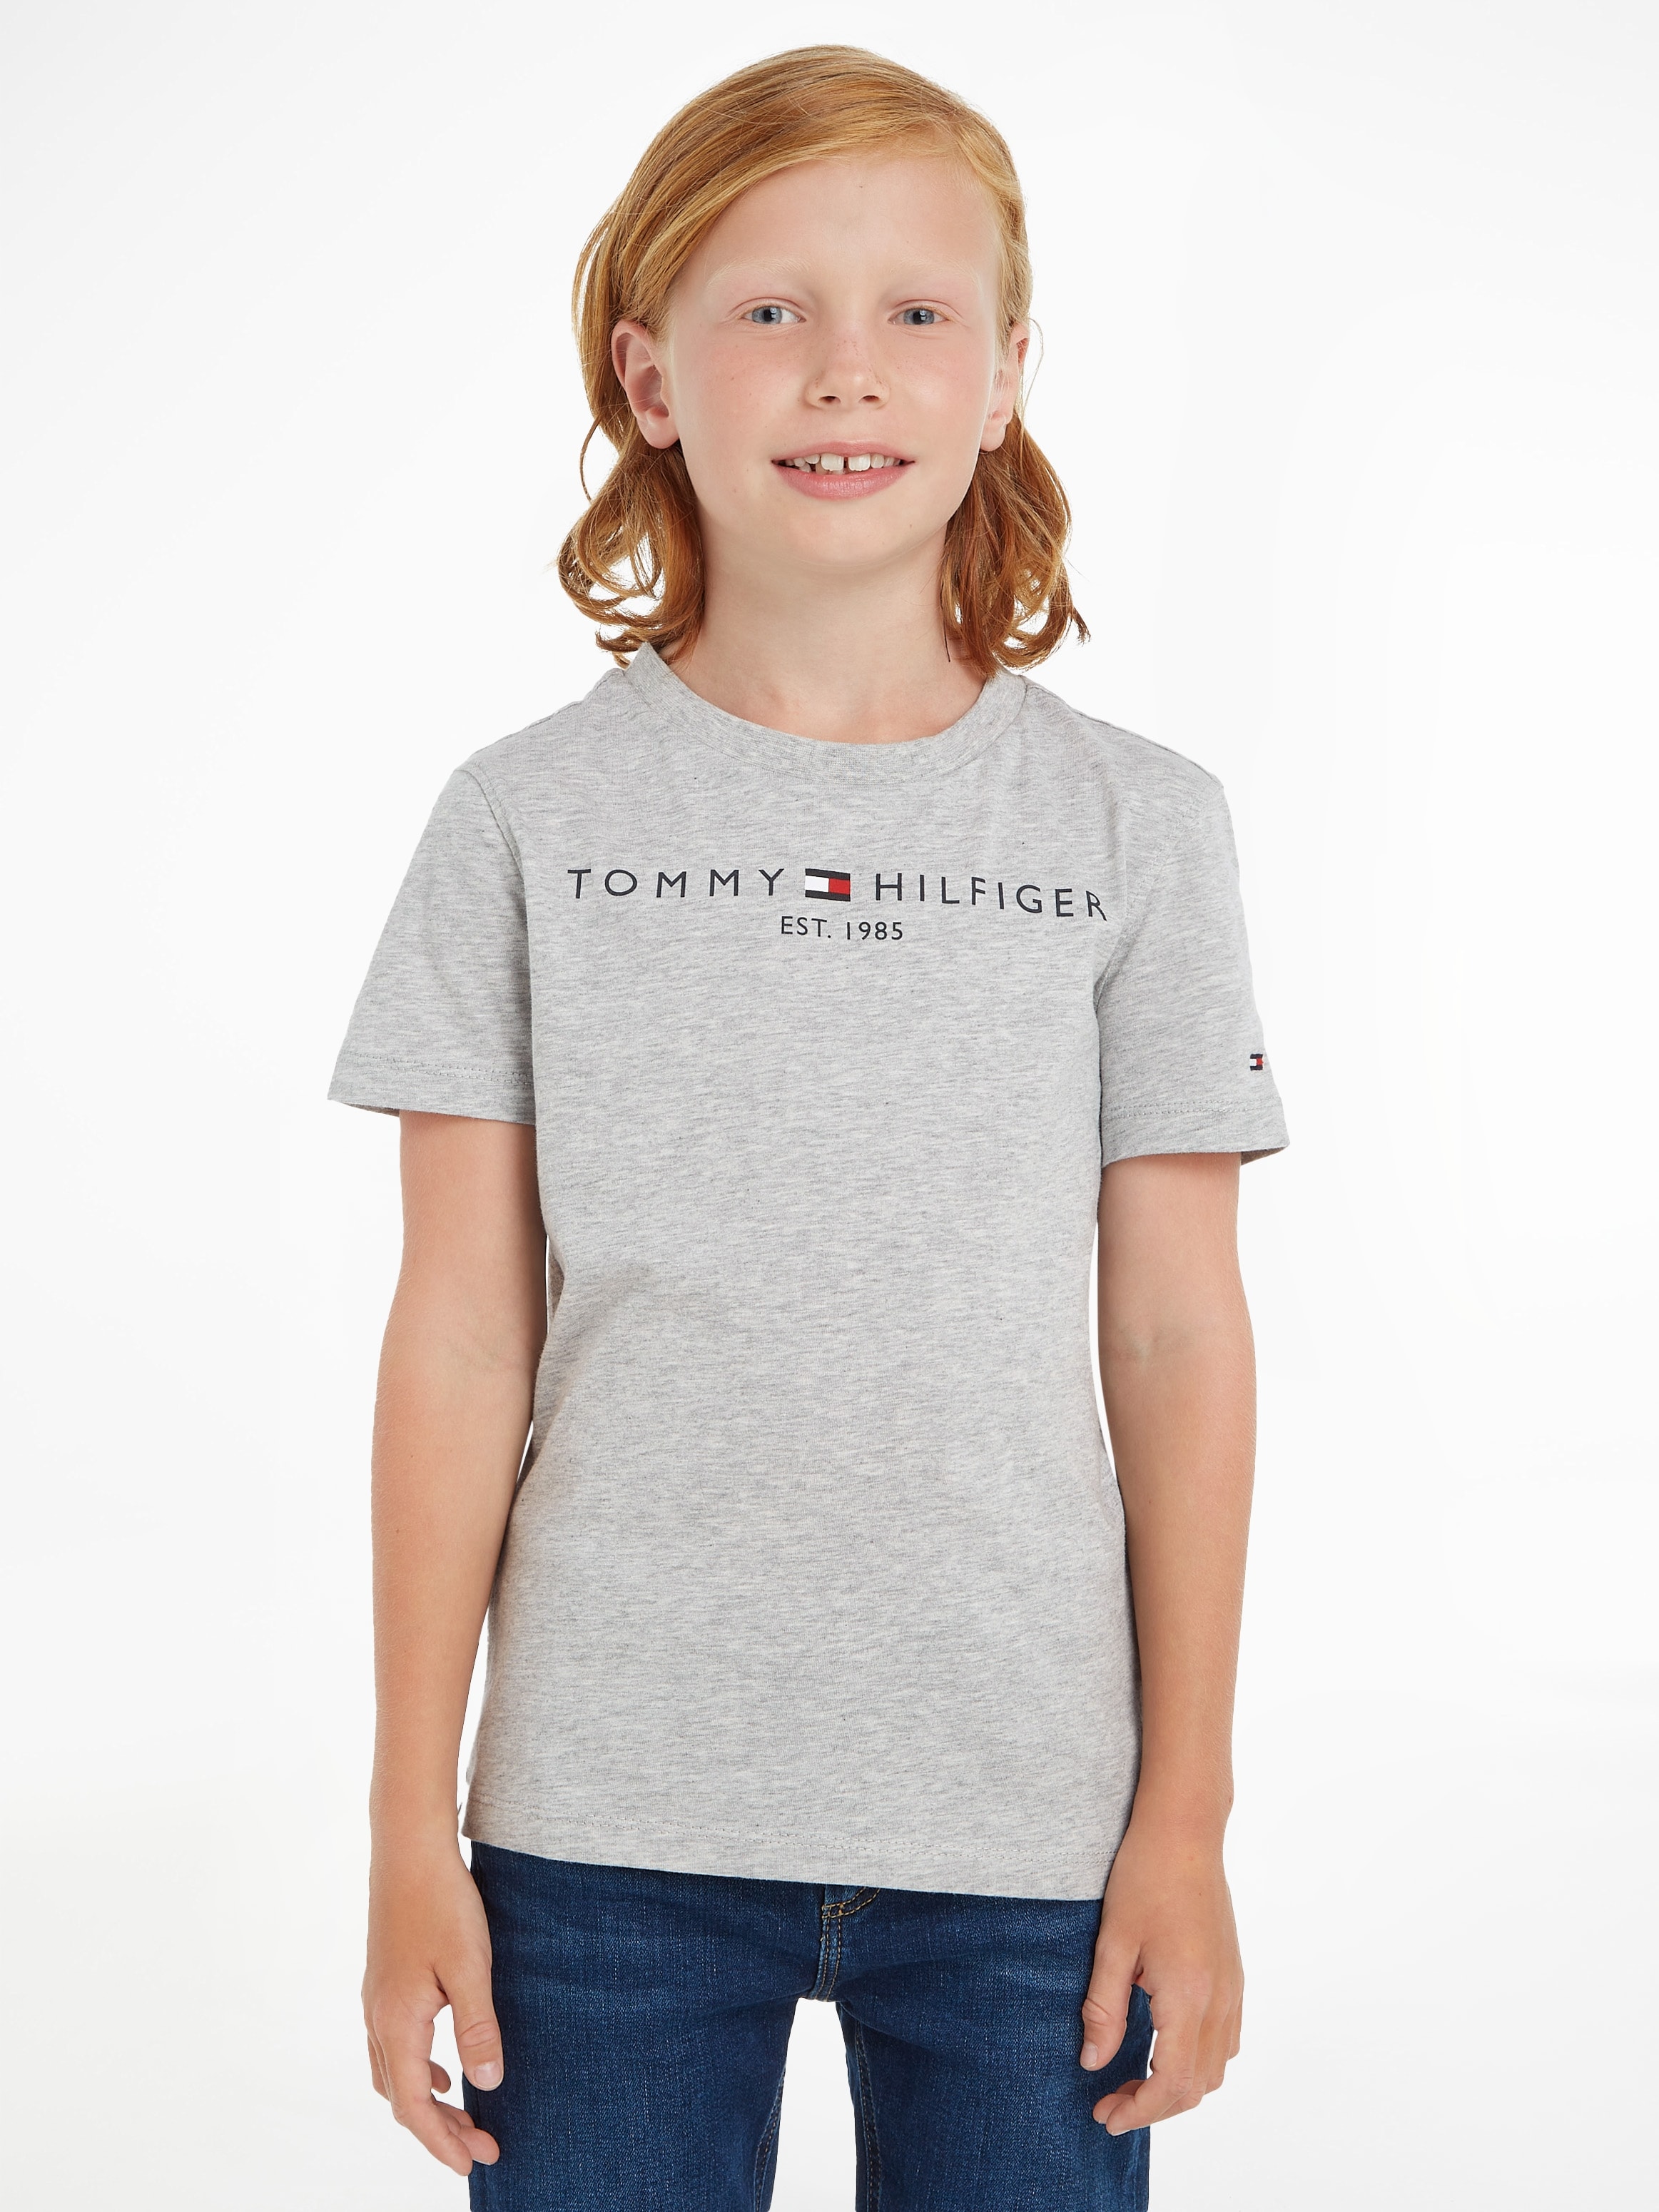 Mädchen bei T-Shirt bestellen OTTO und Hilfiger TEE«, Kinder »ESSENTIAL MiniMe,für Junior Kids Tommy Jungen